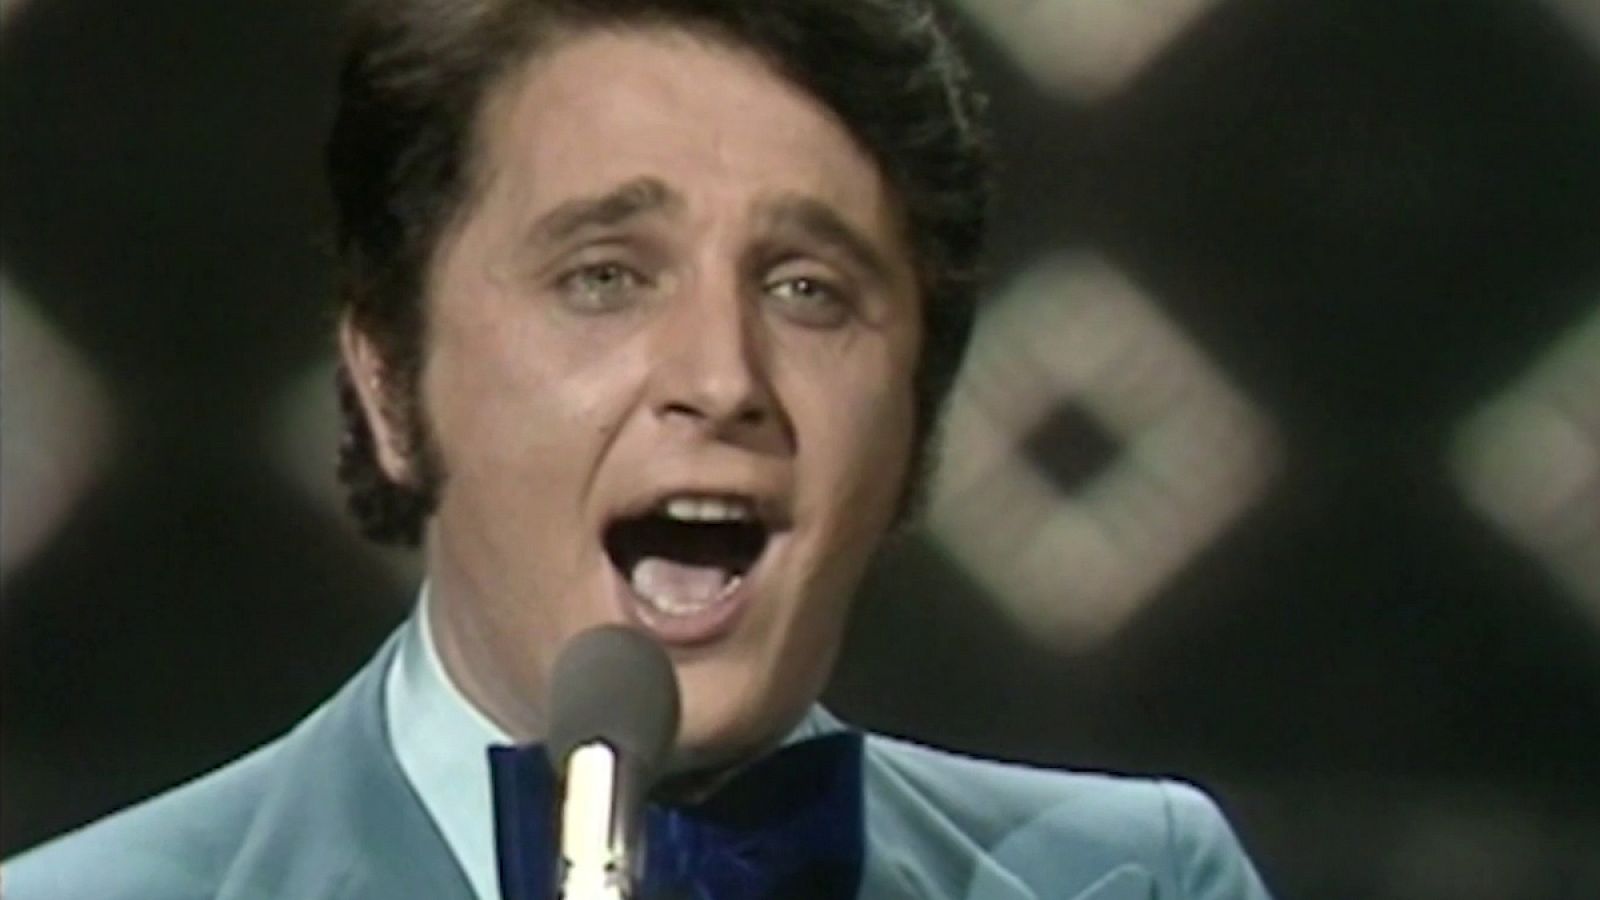 Festival de Eurovisión 1972 - Jaime Morey cantó "Amanece"